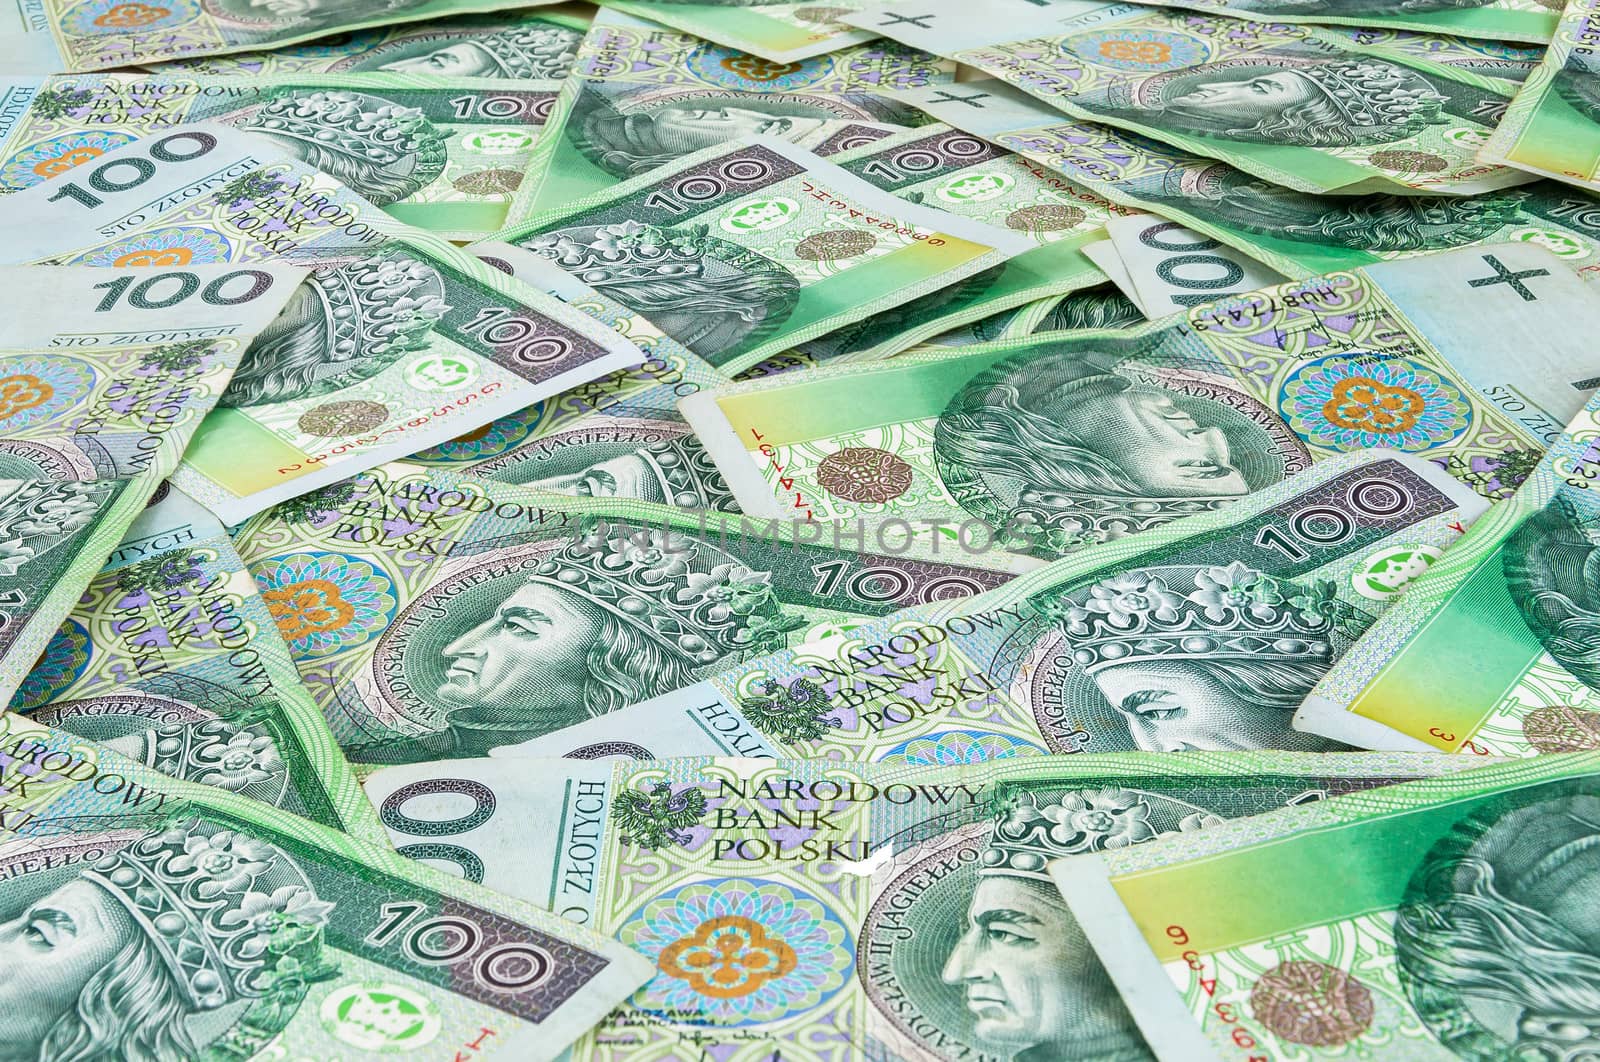 Background of 100 PLN (polish zloty) banknotes